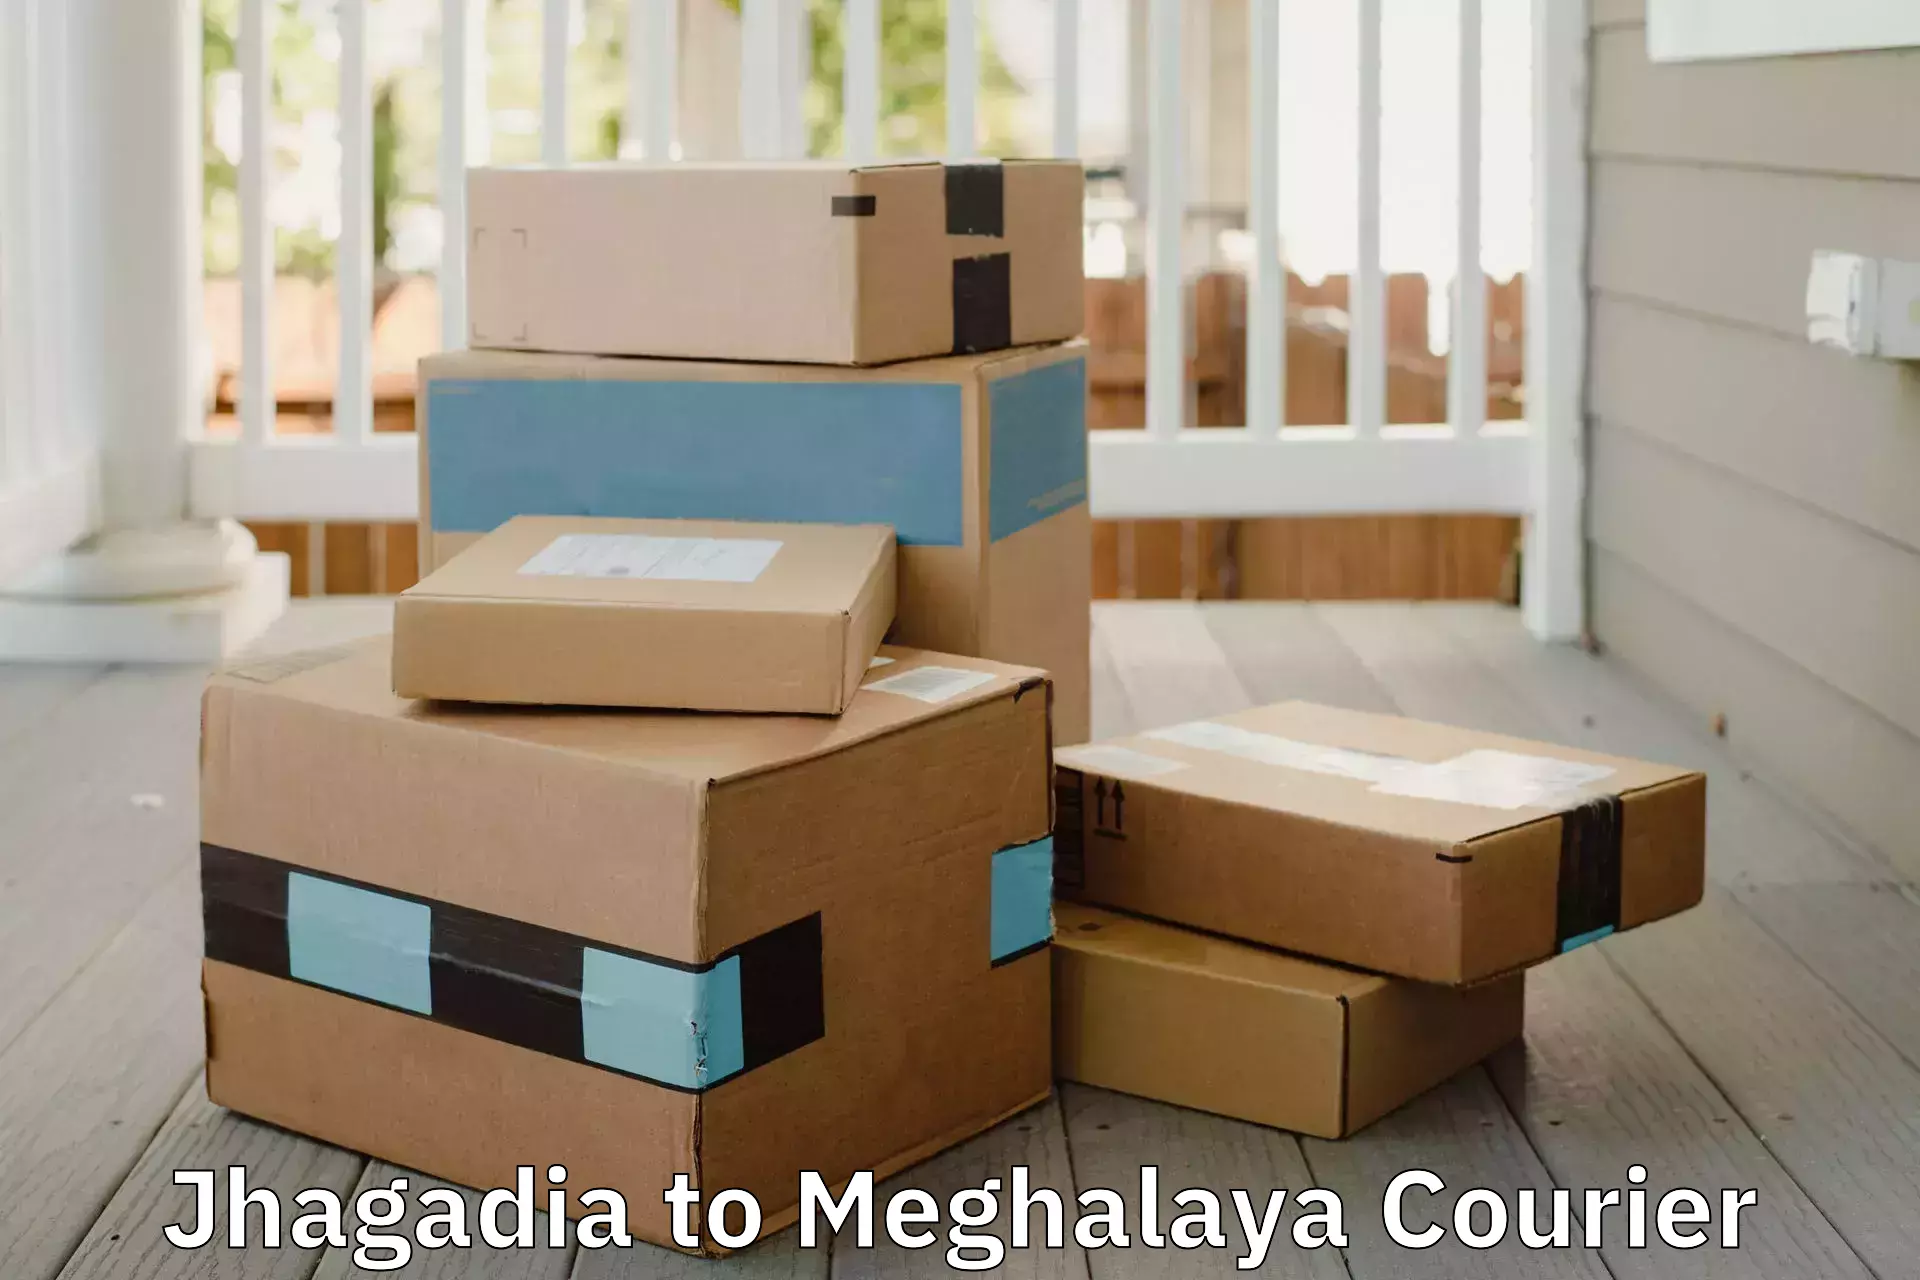 Nationwide moving services Jhagadia to Shillong